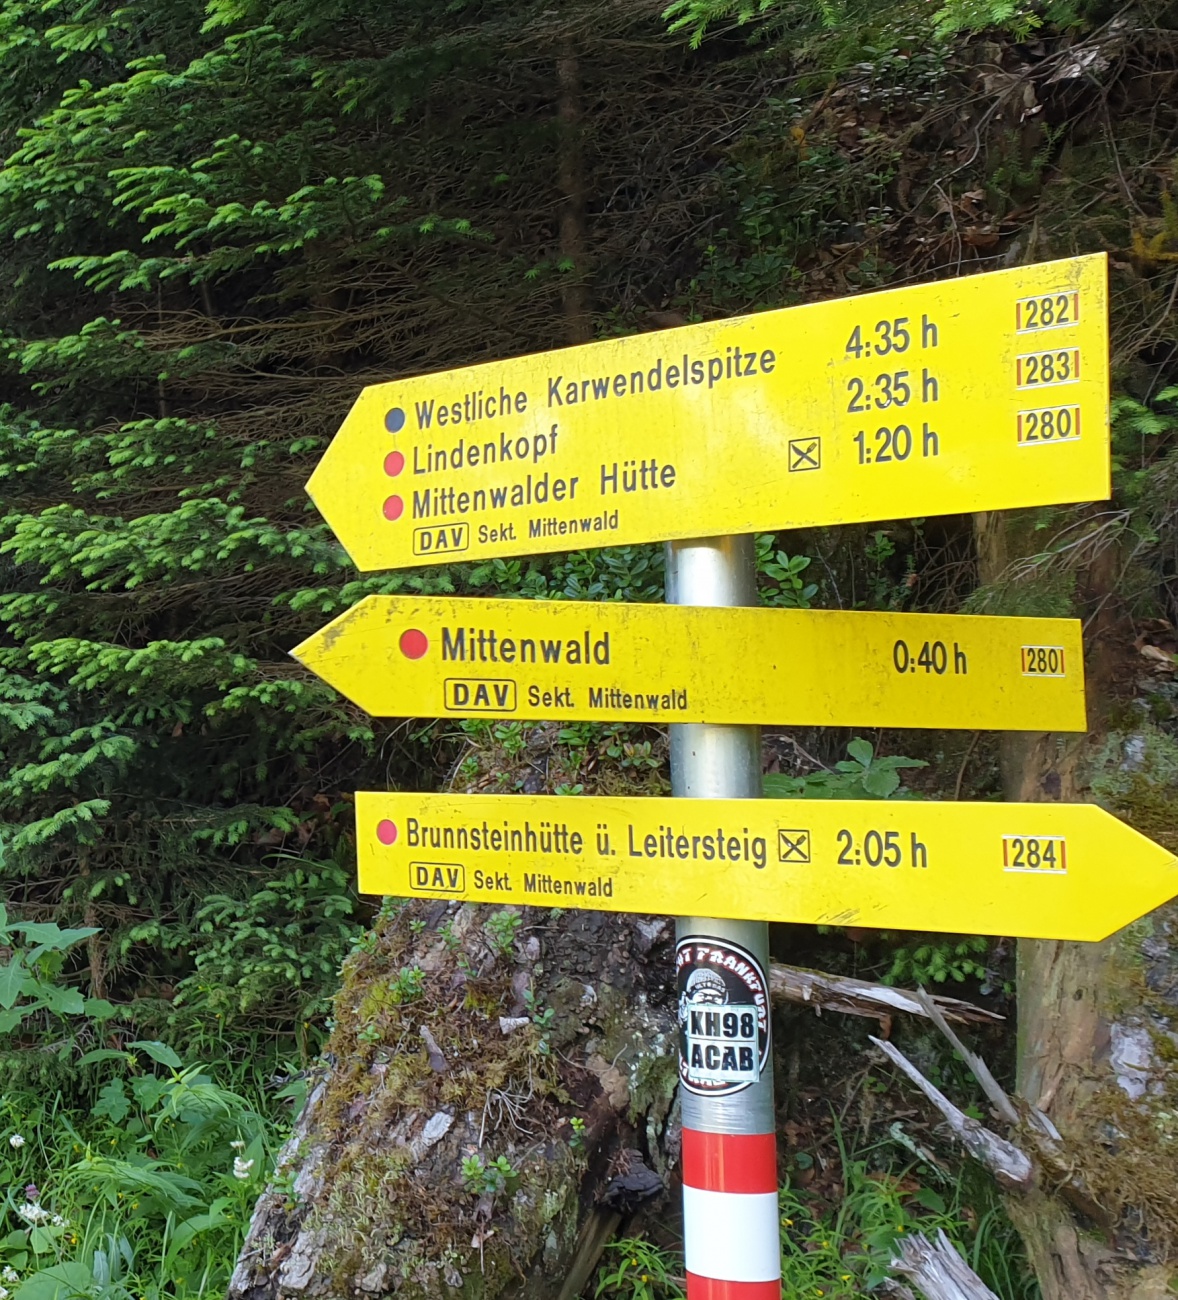 Foto: Martin Zehrer - Nur noch 1,20h lang ist der interessante Aufstieg zur Mittenwalder Hütte. 